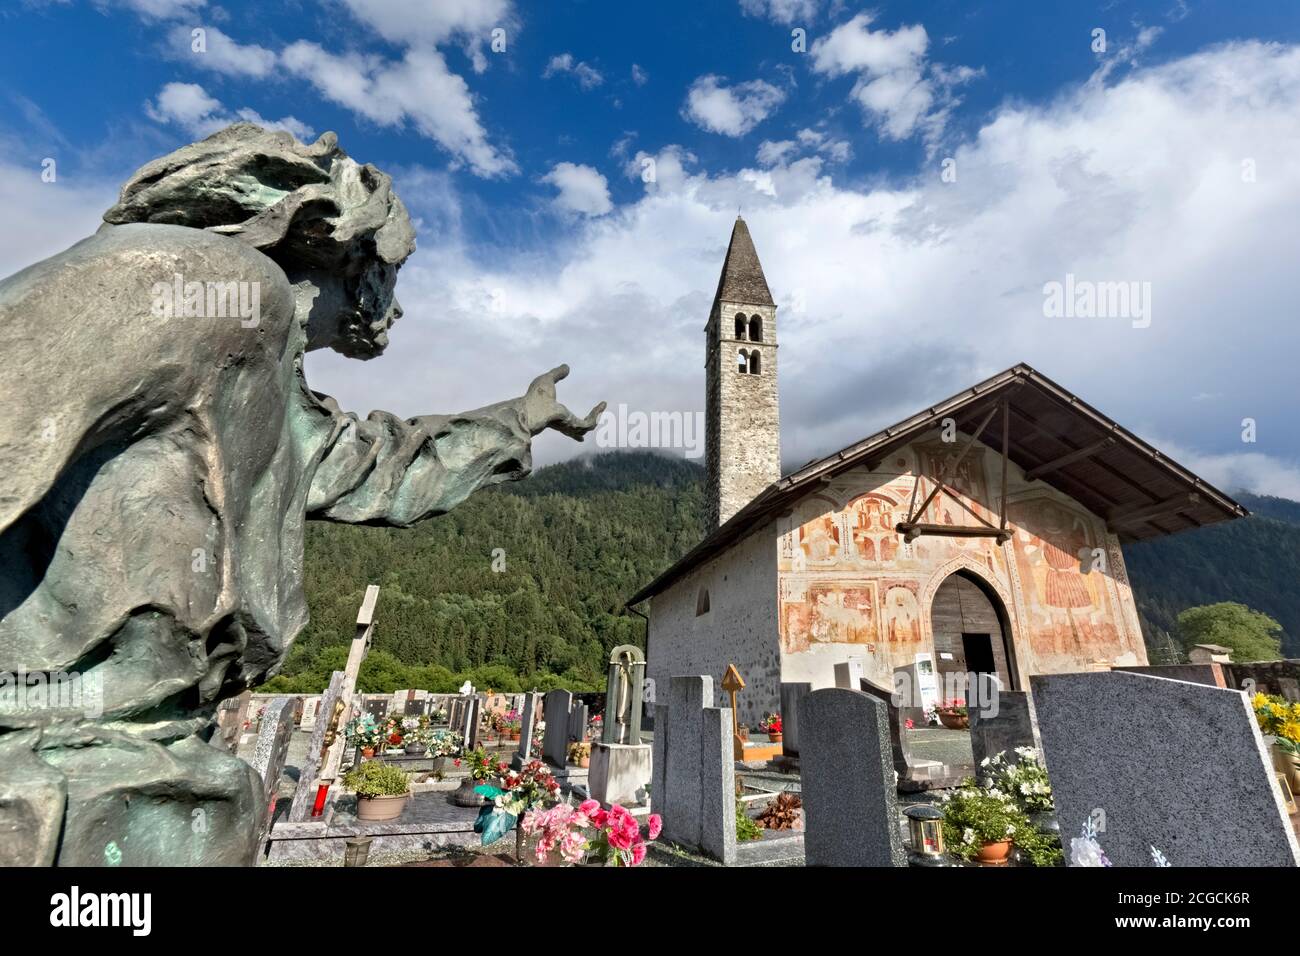 L'église de Sant'Antonio Abate de Pelugo. Vallée de Rendena, province de Trento, Trentin-Haut-Adige, Italie, Europe. Banque D'Images